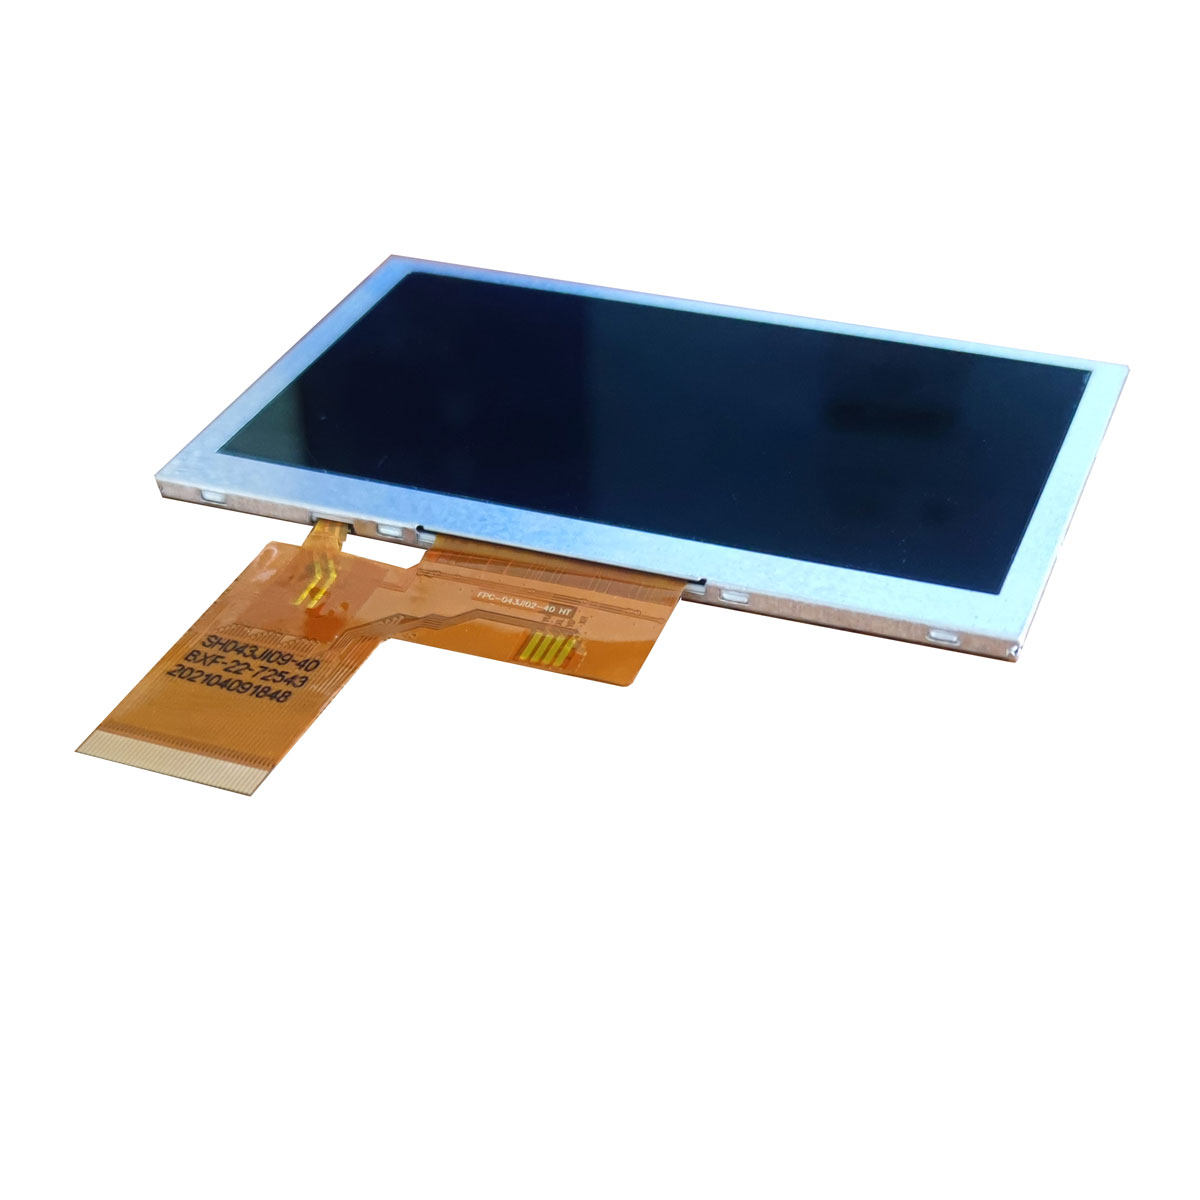 安徽芜湖合肥TFT-LCD显示屏的主要特点体现在哪些方面？